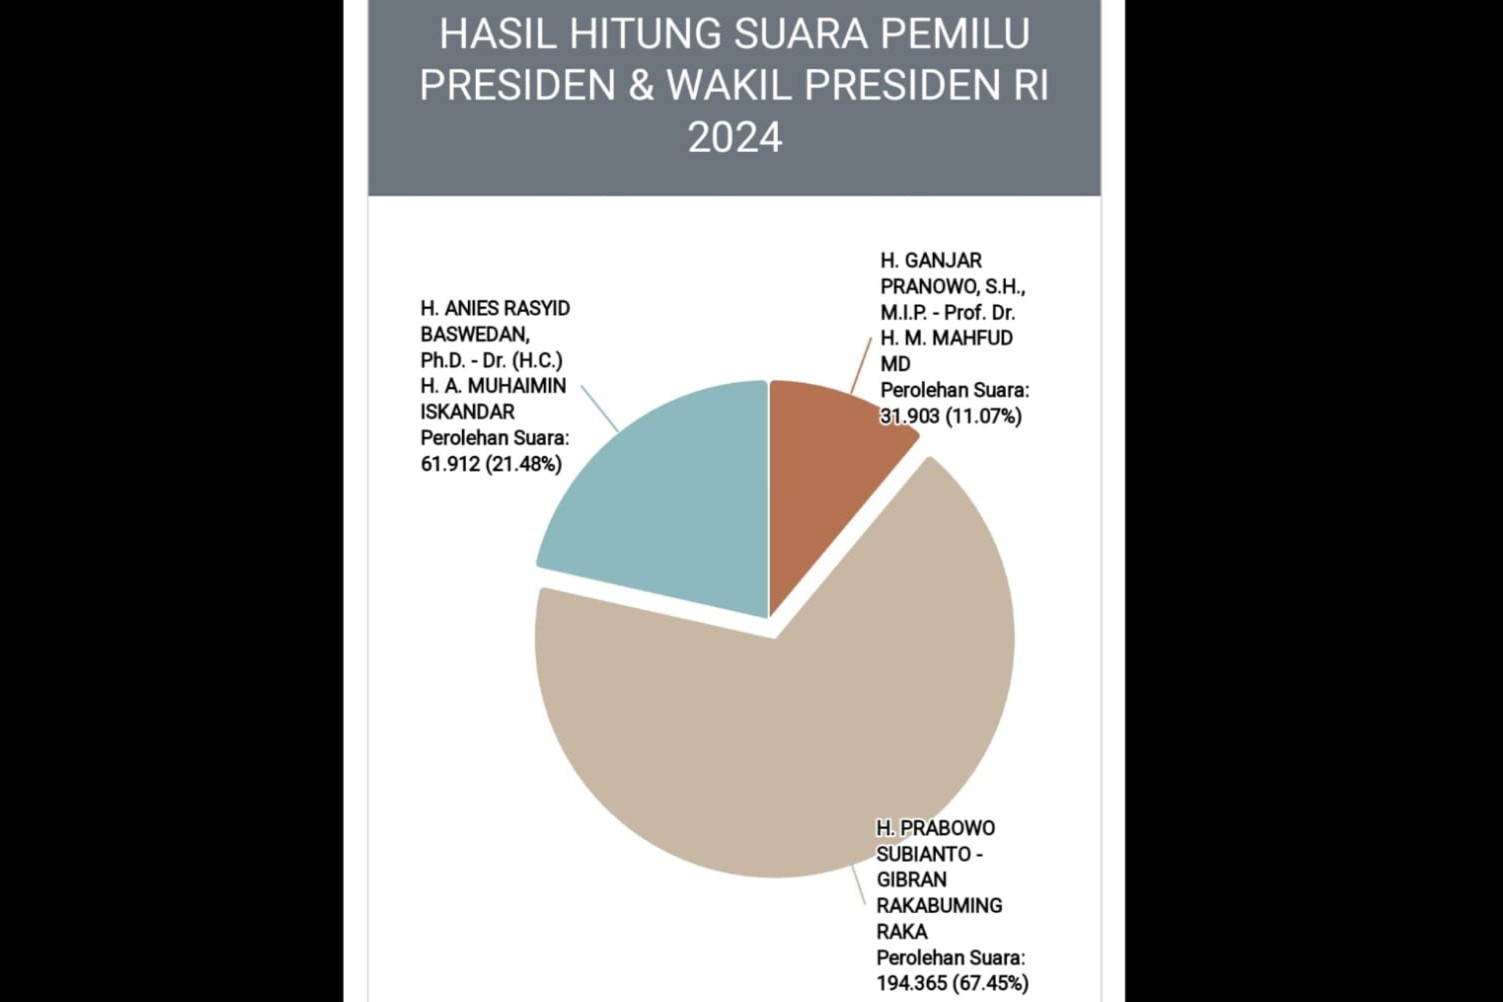 Prabowo-Gibran Dominan di Kaltim Berdasarkan Form Model C/D Hasil KPU